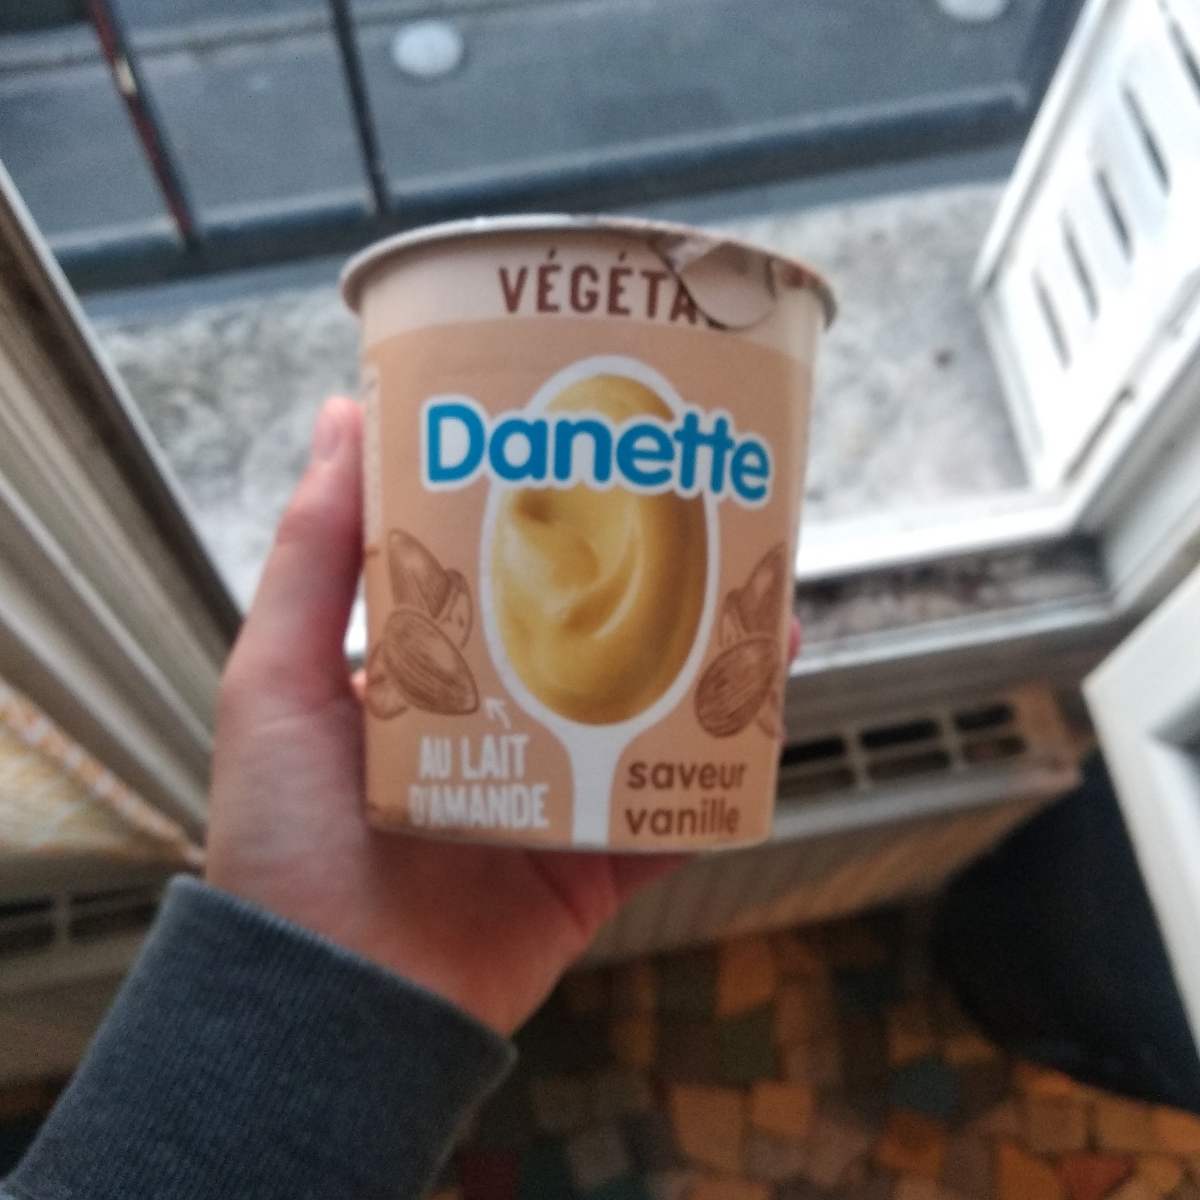 Danette Danette saveur vanille Review